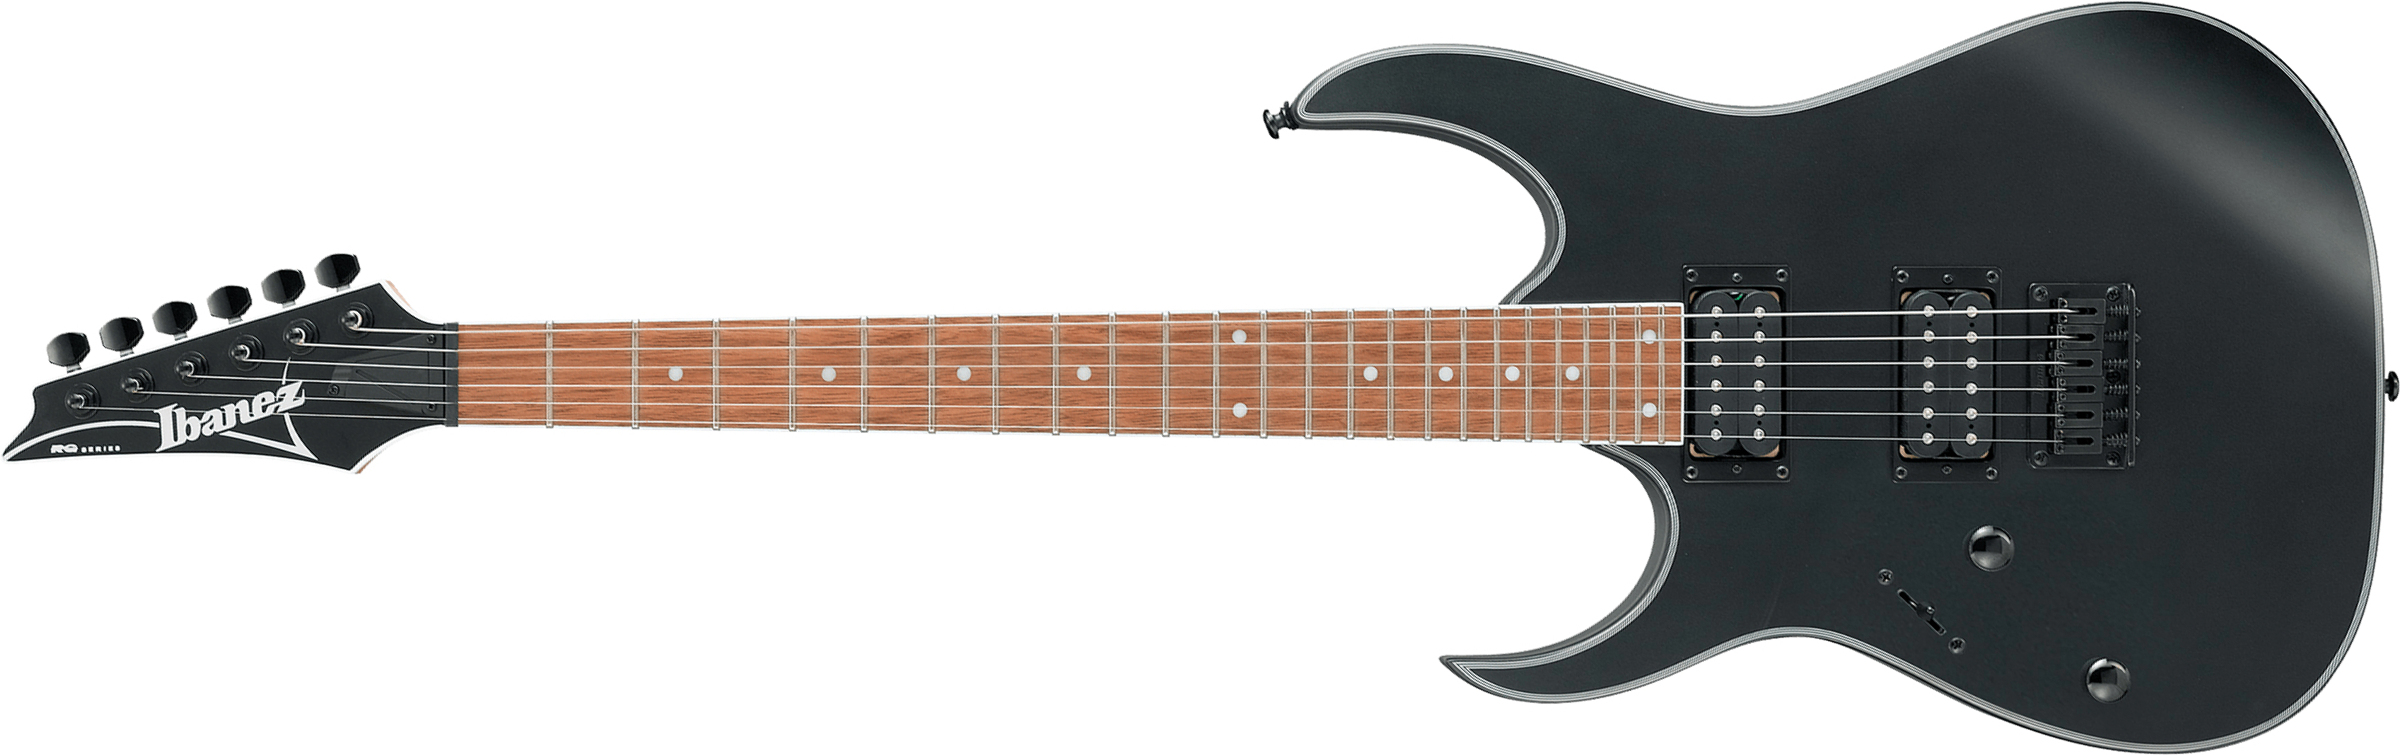 Ibanez Rg421exl Bkf Lh Gaucher Standard Hh Ht Jat - Black - E-Gitarre für Linkshänder - Main picture